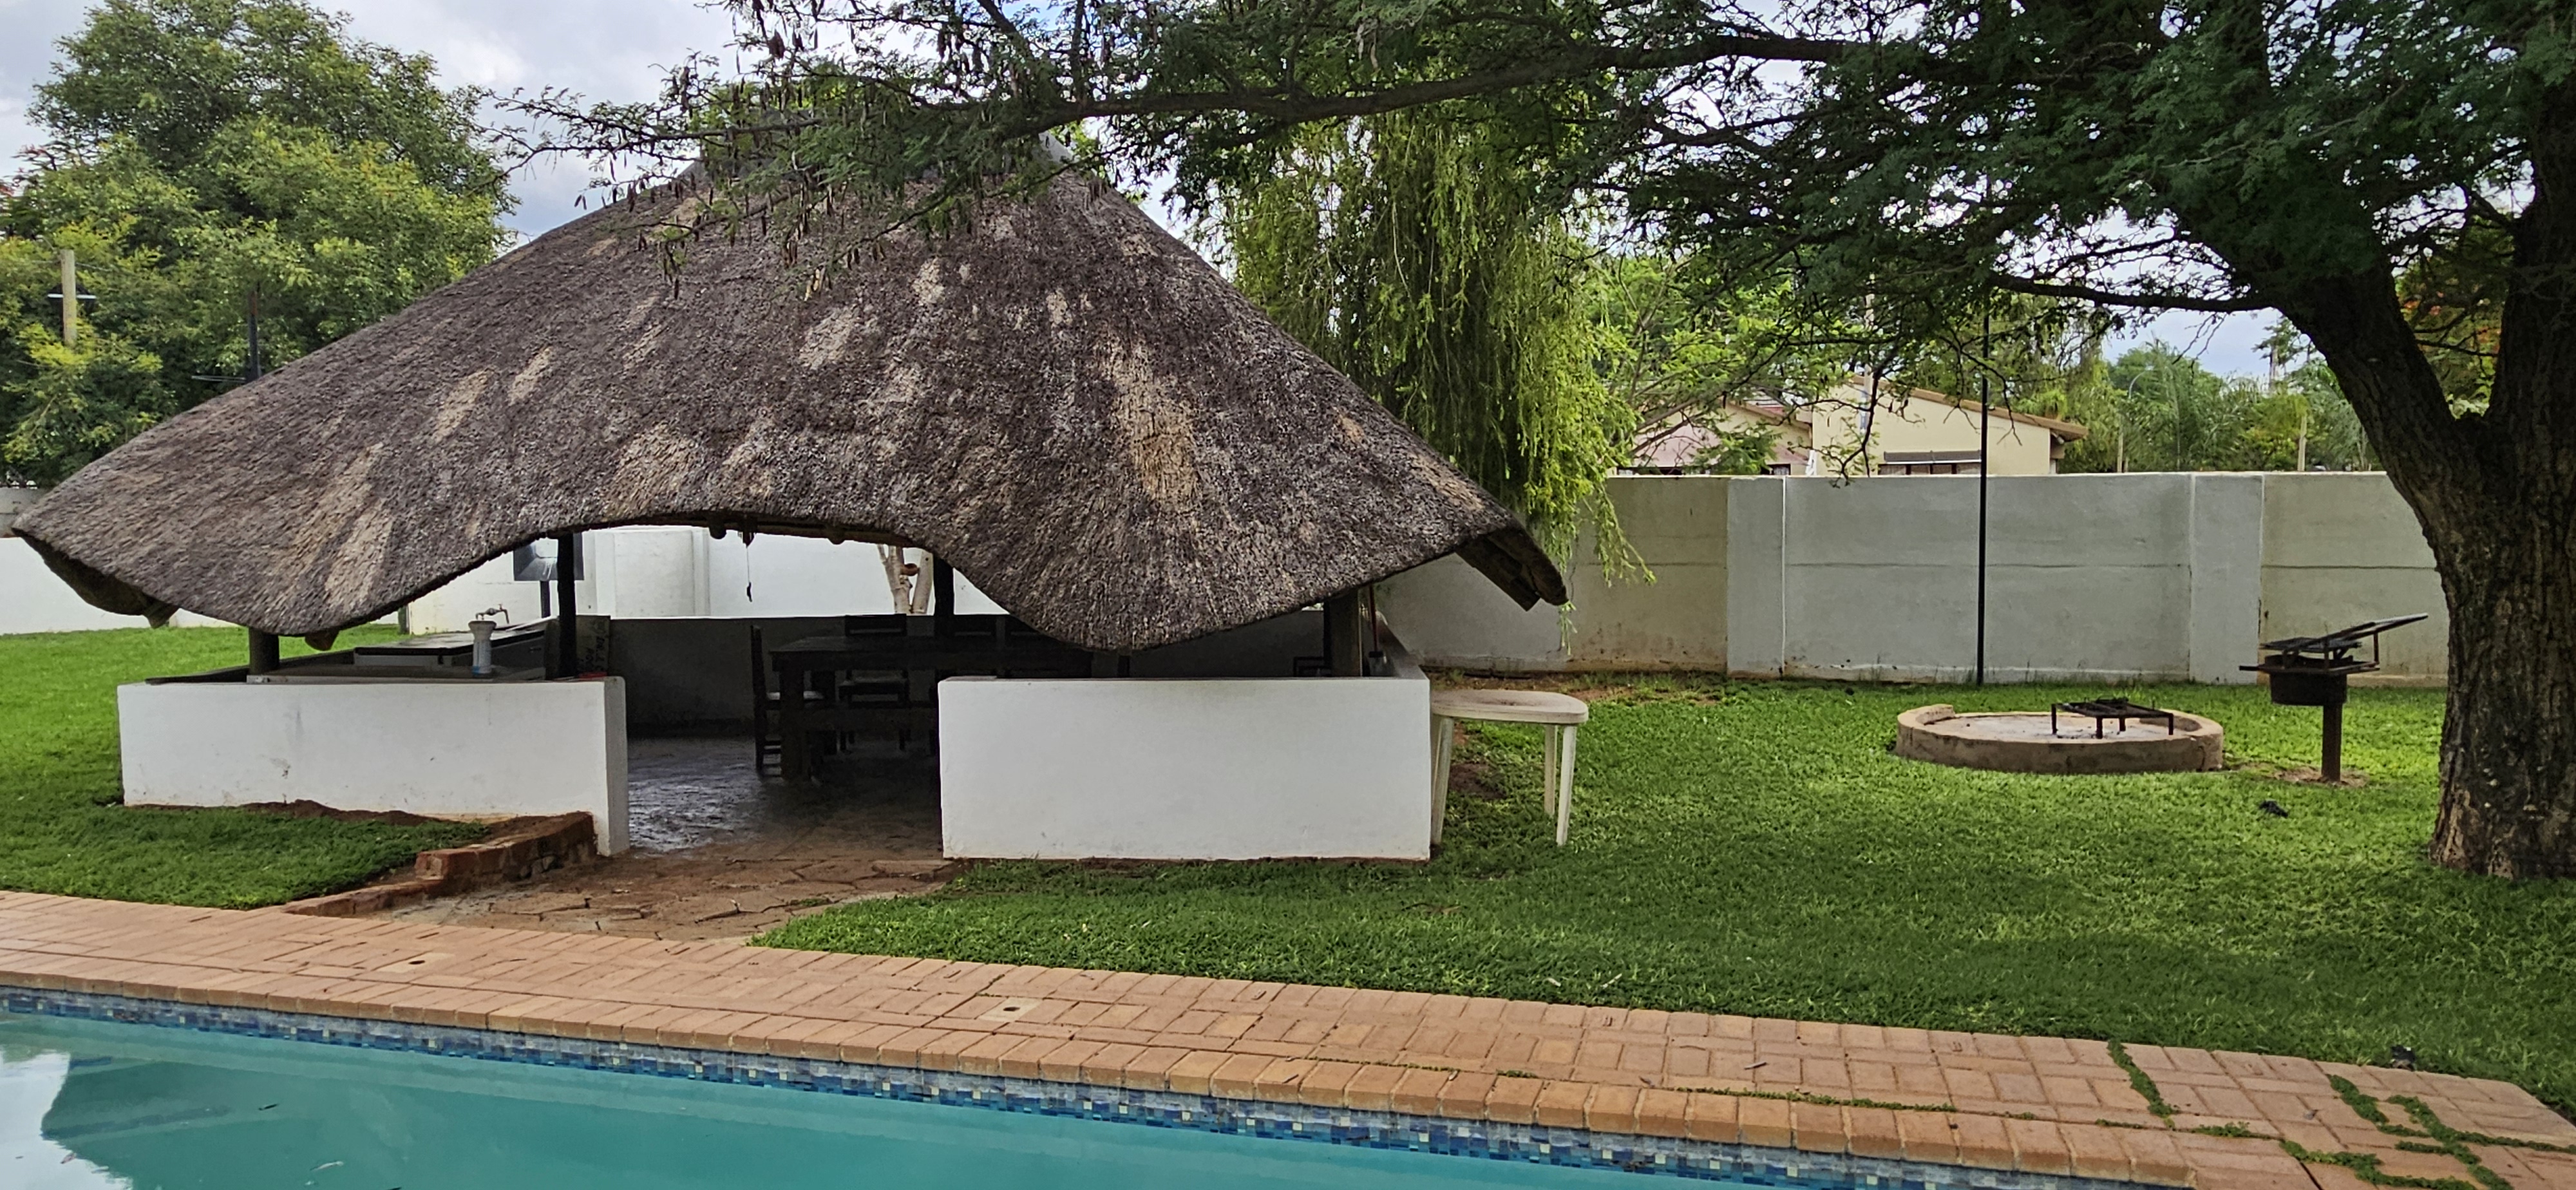 6 Bedroom Property for Sale in Bela Bela Limpopo